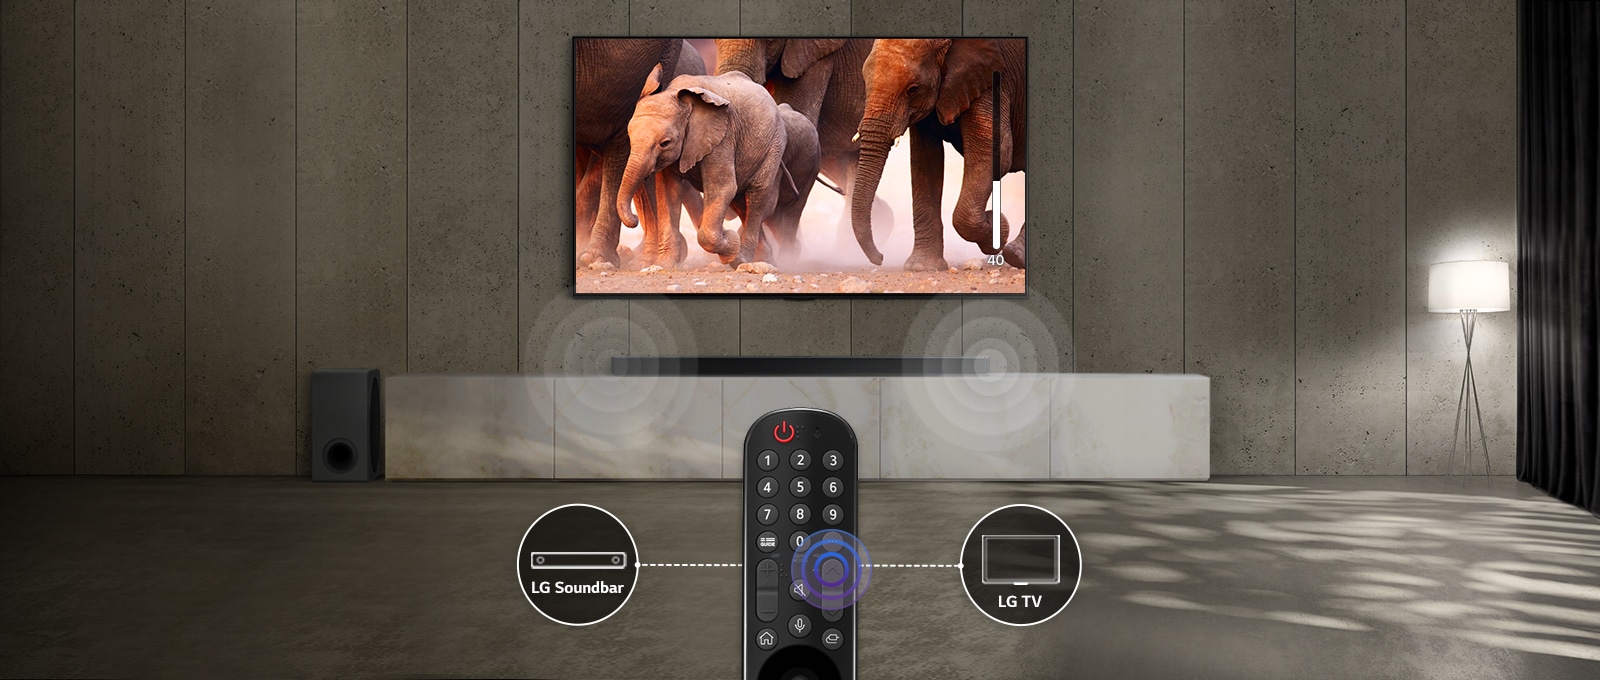 Klusināti apgaismotā telpā televizorā attēlota ziloņu svīta. Skaļrunī zem televizora vizualizēts skaņas efekts. Attēla apakšā ir televizora tālvadības pults, kuras abas malas savieno skaļruni un TV ikonu.